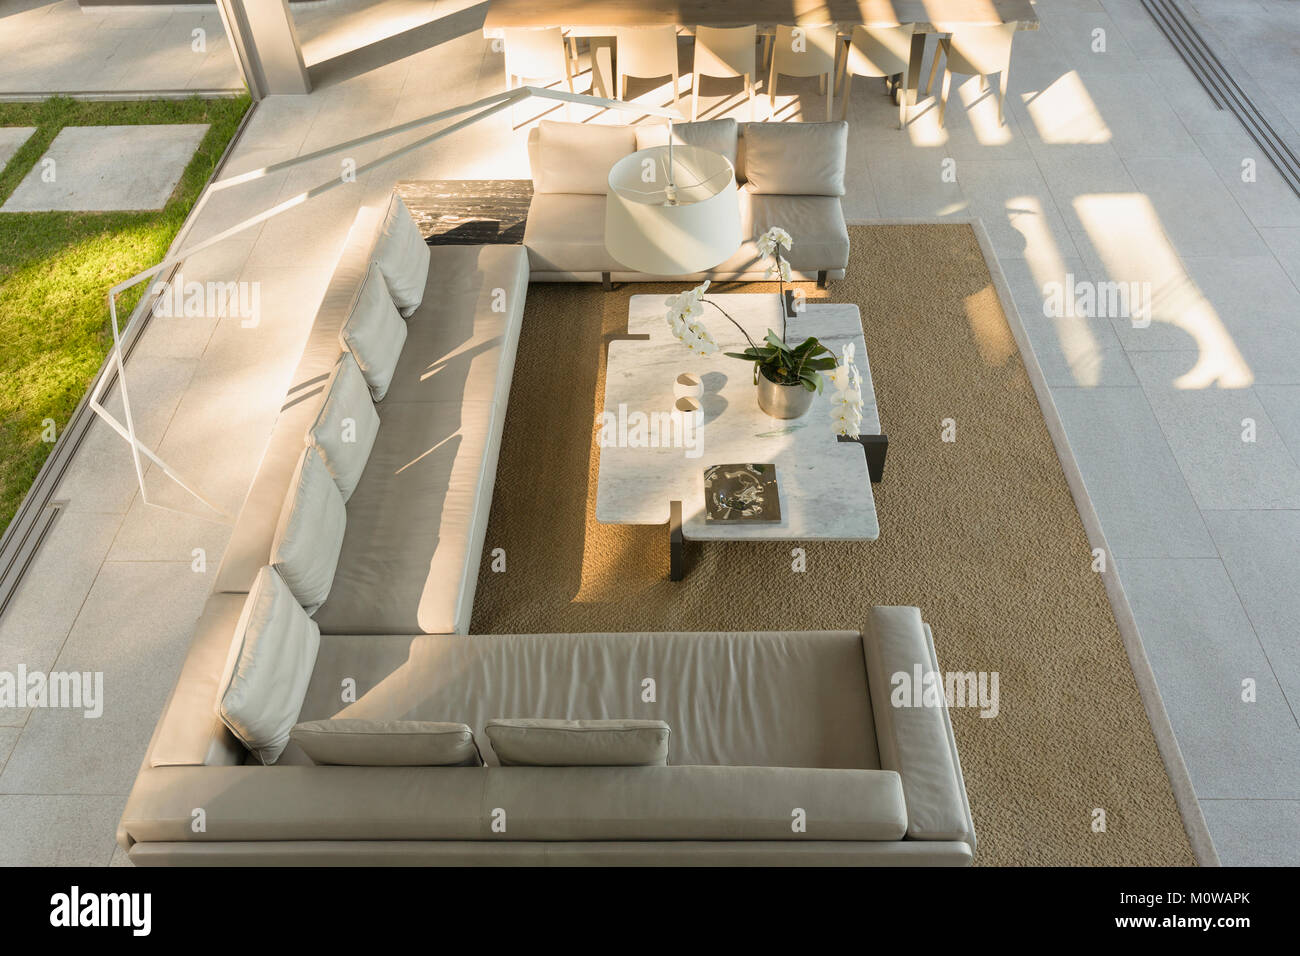 Vue surélevée en canapé de luxe, moderne home vitrine salon intérieur Banque D'Images